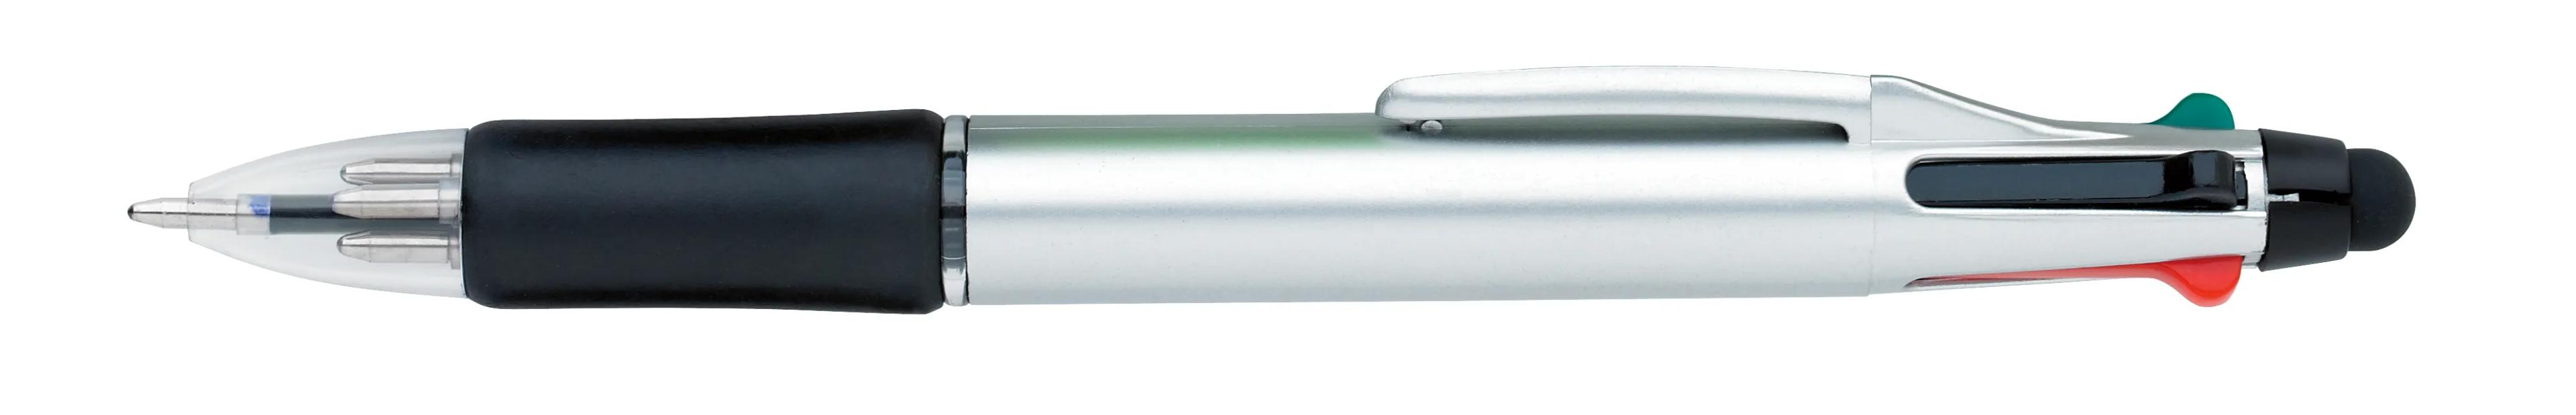 Orbitor Metallic Stylus Pen 2 of 56